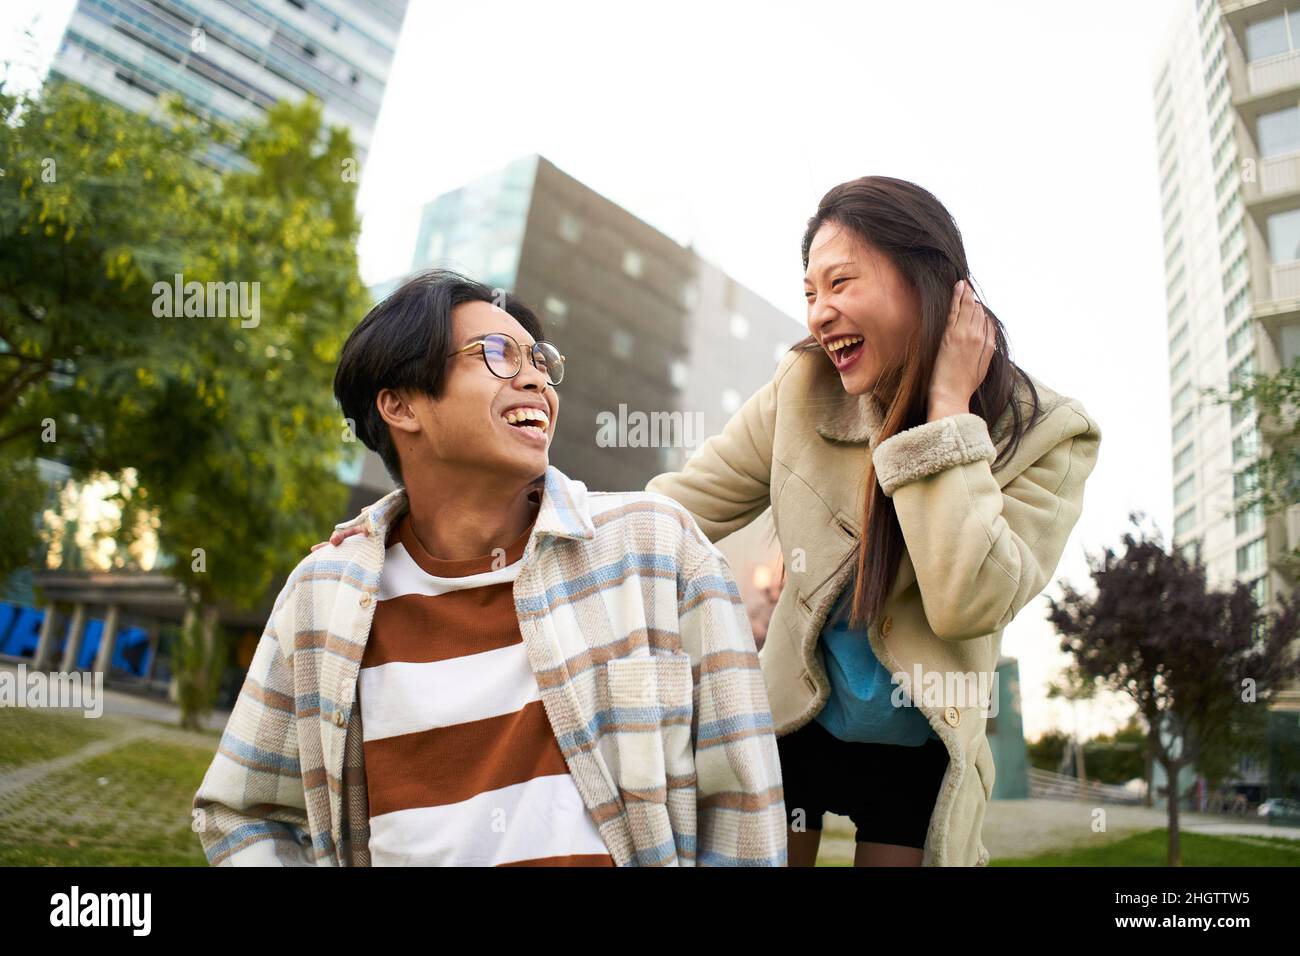 Un couple asiatique souriant s'est bien amusé et s'est regardé les uns les autres.Les jeunes amoureux font des vacances.Culture de la jeunesse et style de vie urbain. Banque D'Images